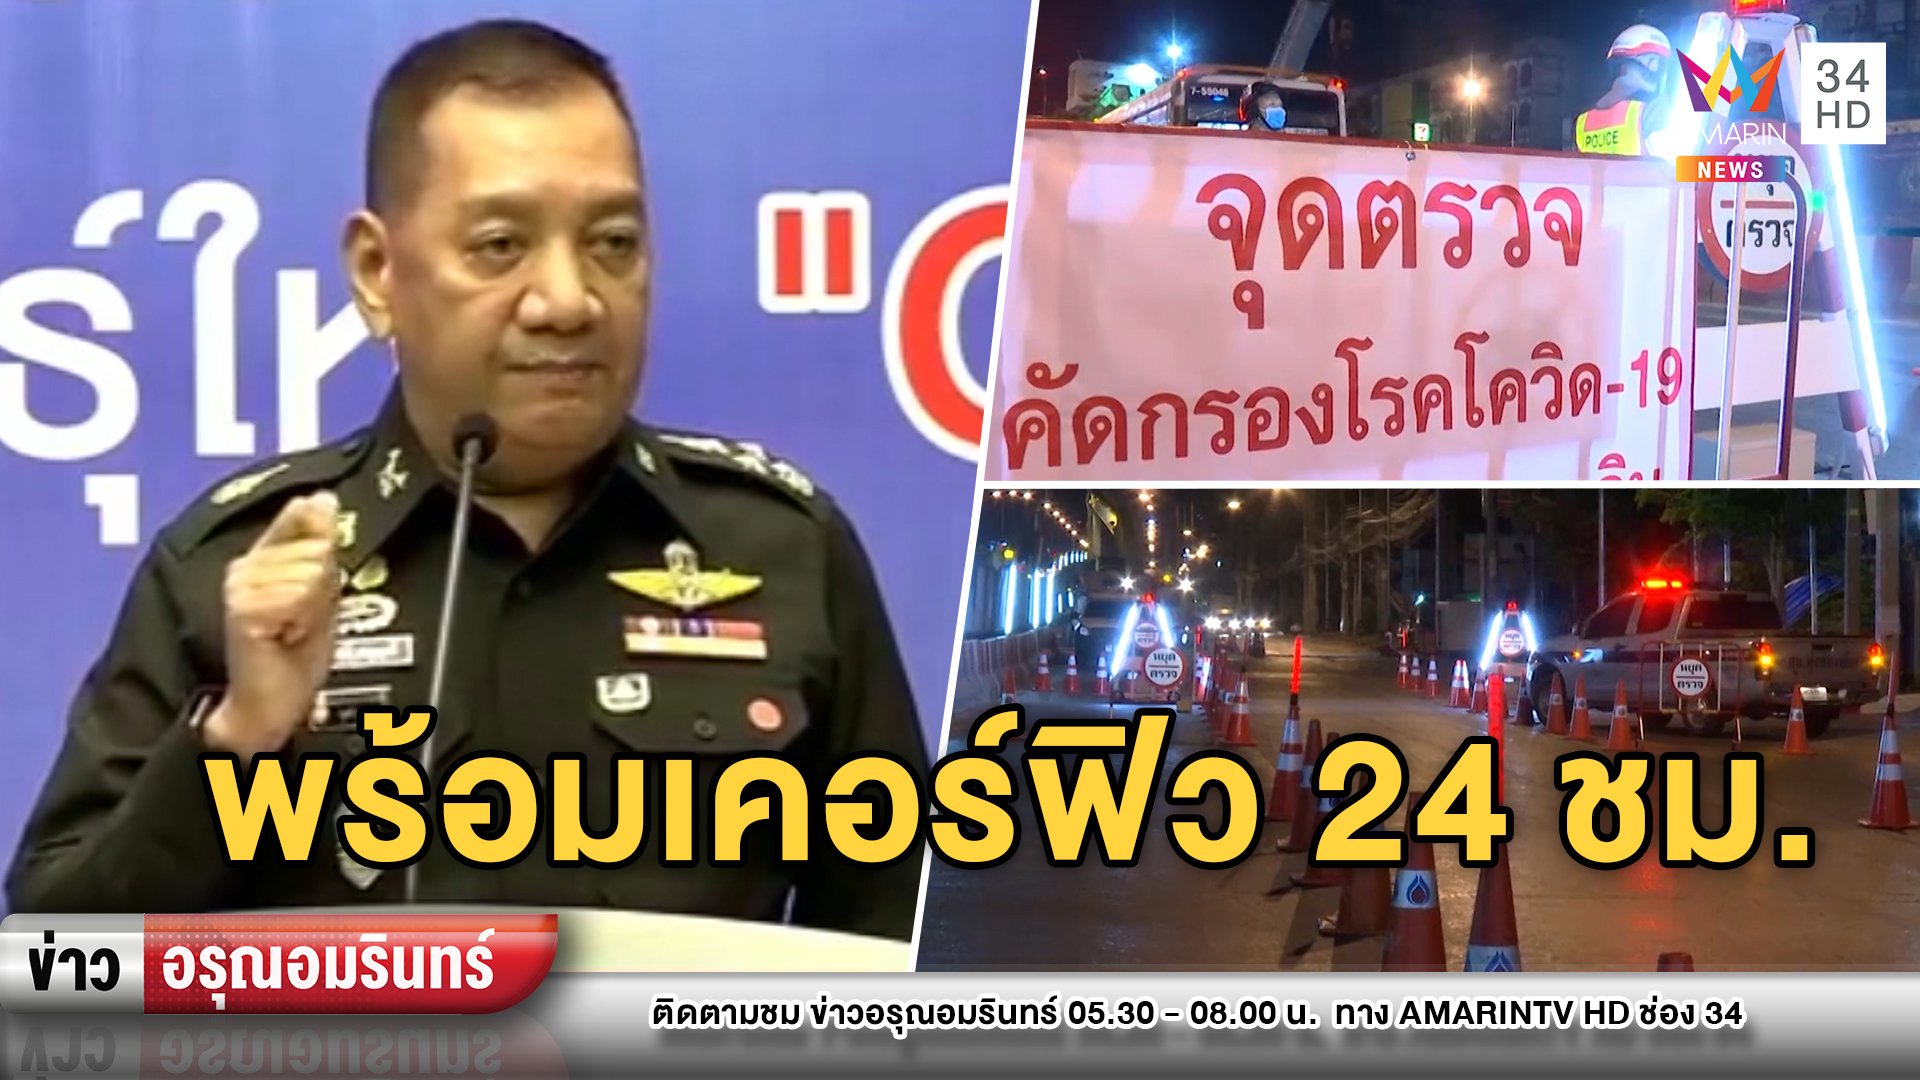 ผบ.สส. ขู่คนไทยหากไม่ร่วมต้านโควิด-19 พร้อมเคอร์ฟิวตลอดเวลา | ข่าวอรุณอมรินทร์ | 27 มี.ค. 63 | AMARIN TVHD34